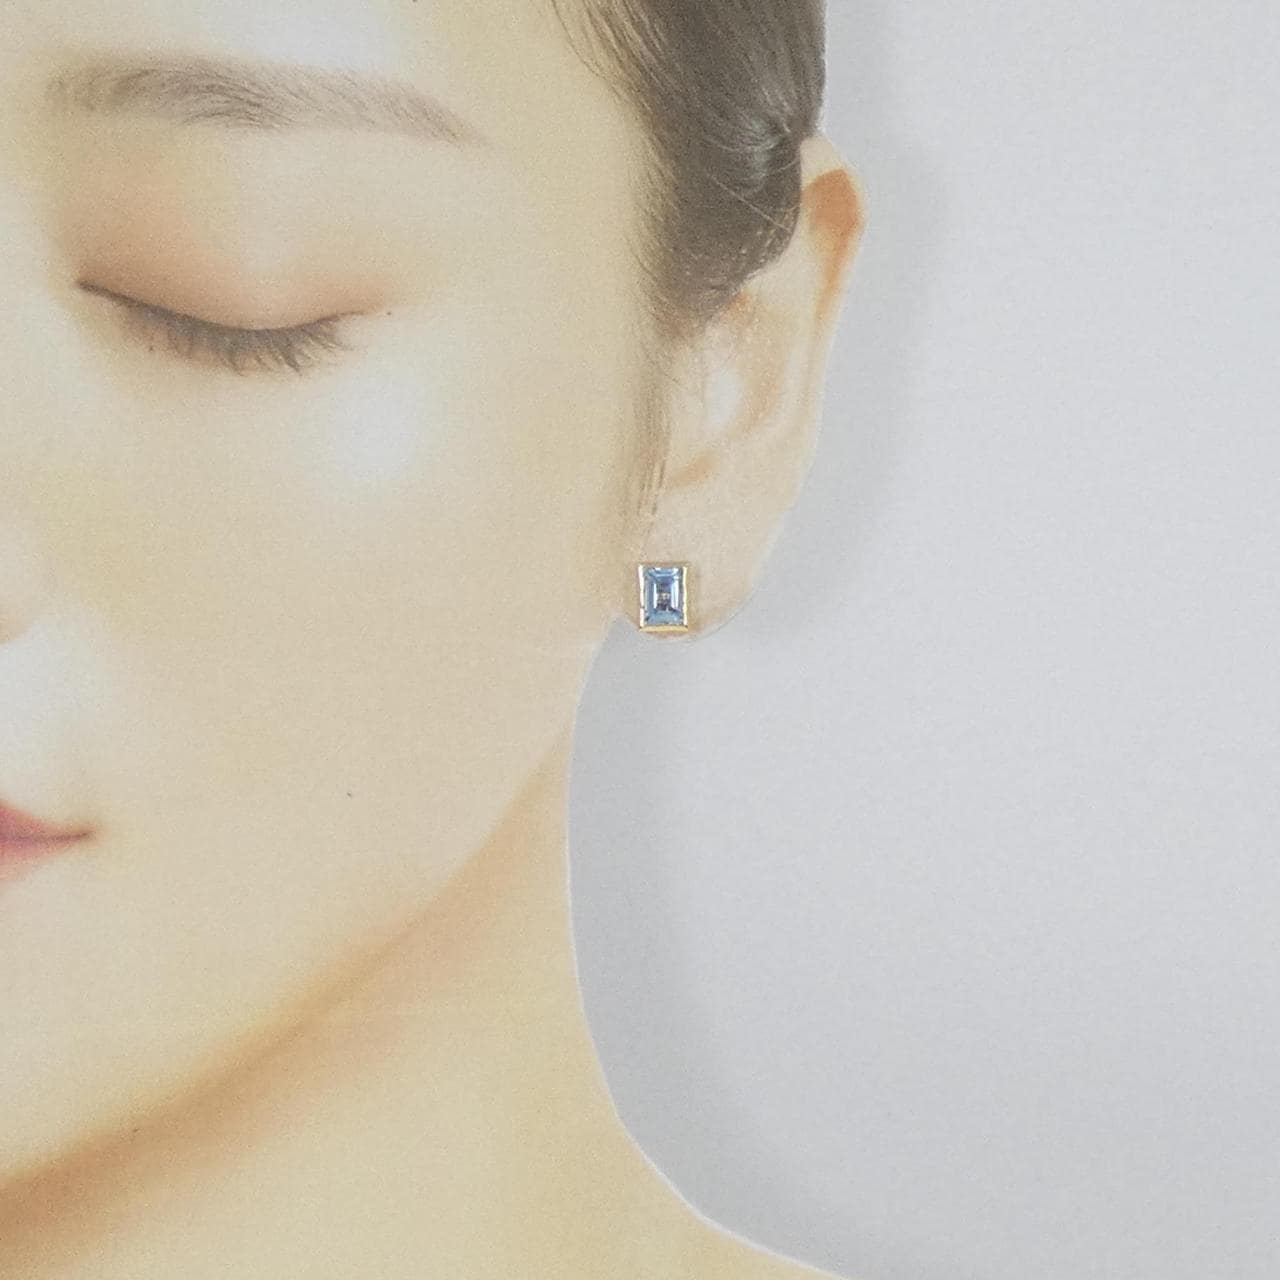 [Remake] K18YG Aquamarine earrings 1.30CT one ear